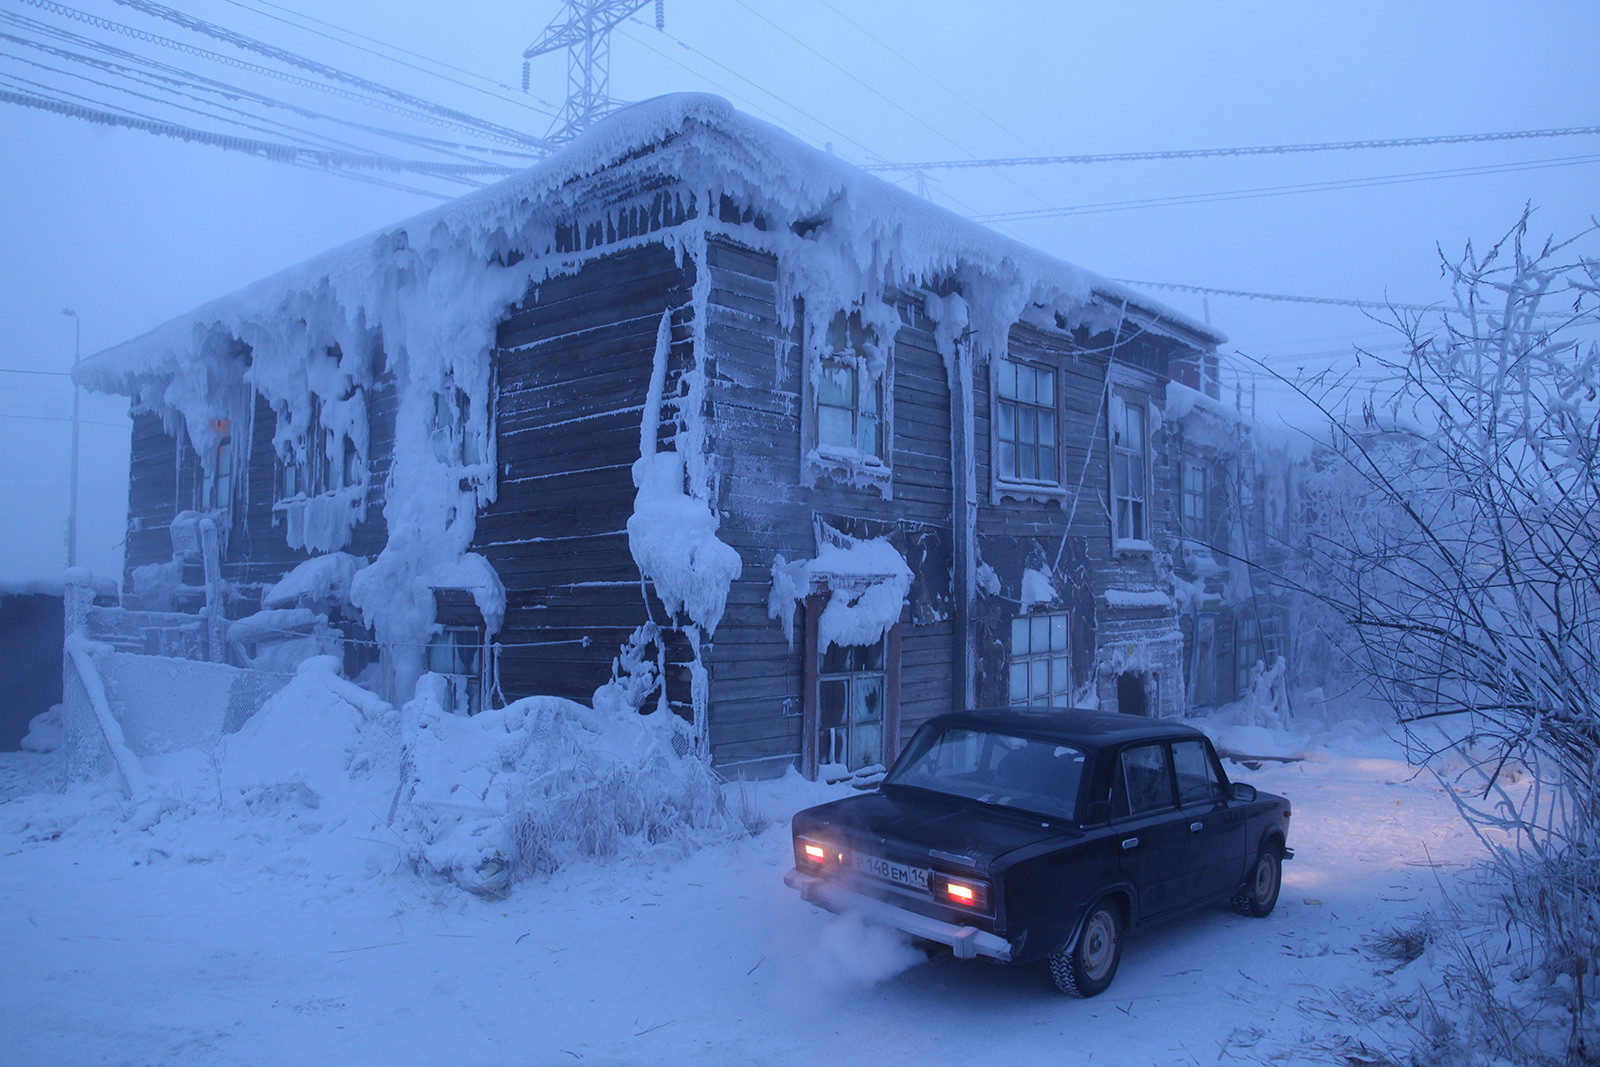 Руски ауто остављен са упаљеним мотором испред зграде оковане снегом и ледом у најхладнијем граду на свету. Аутомобили у Јакутску се морају остављати у топлим гаражама или им мотор мора непрекидно радити, јер ће се у противном бензин замрзнути.